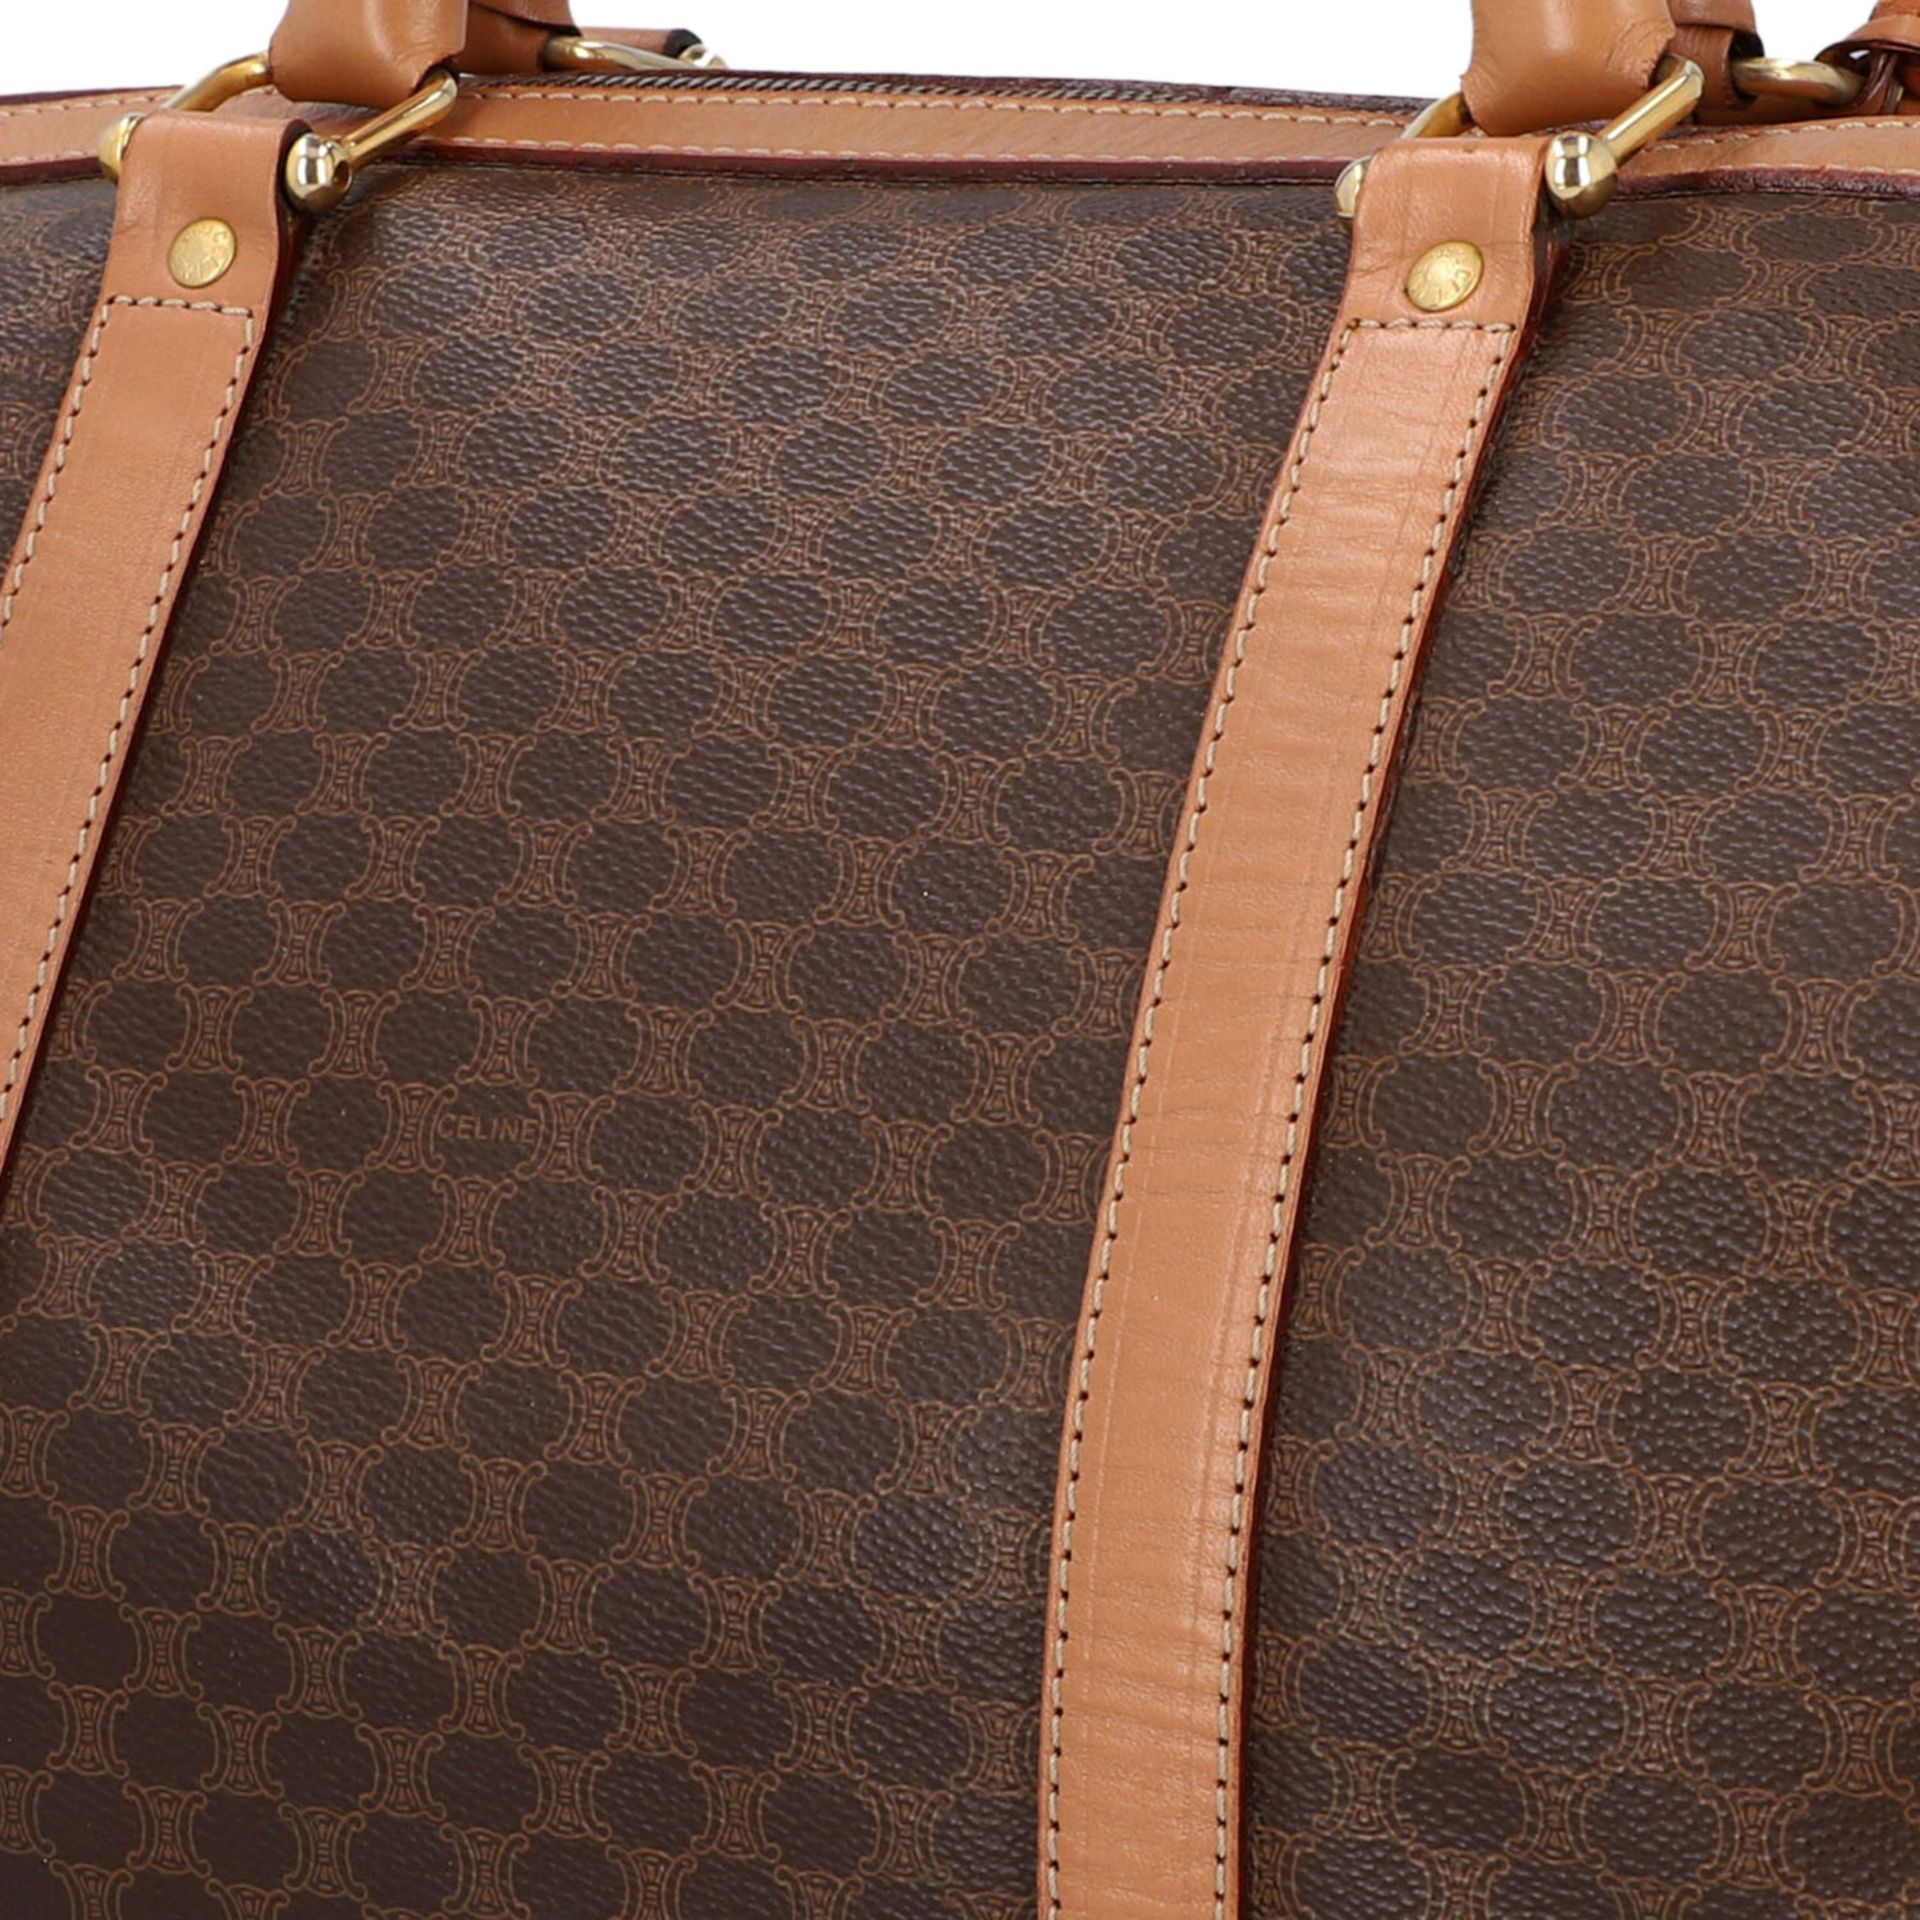 CELINE Handtasche.Logomuster auf dunkelbraunem Grund mit hellbraunem Leder. Front mit - Bild 7 aus 8